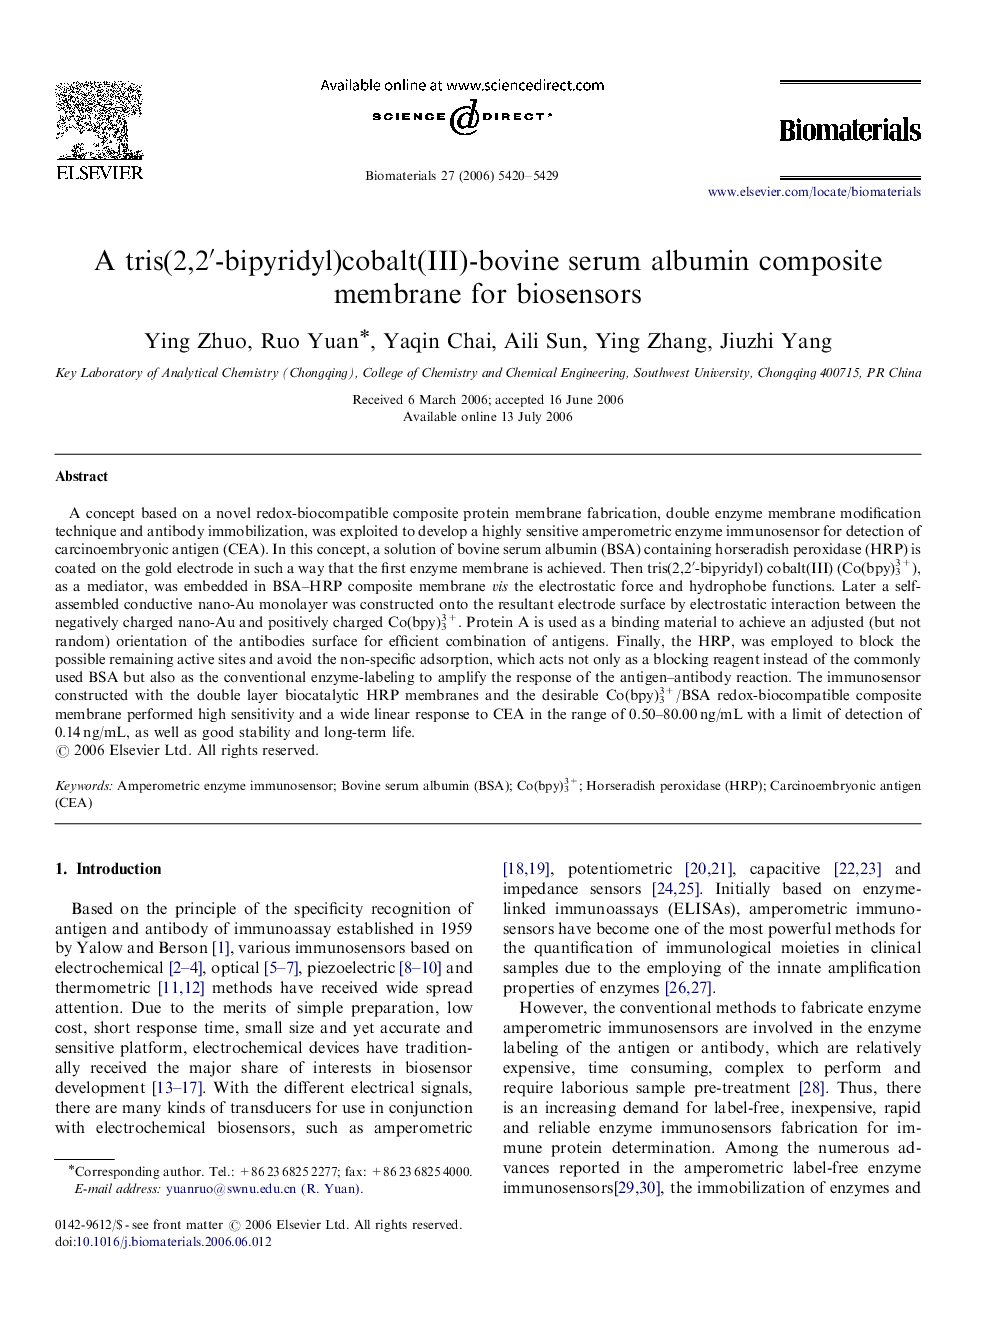 A tris(2,2′-bipyridyl)cobalt(III)-bovine serum albumin composite membrane for biosensors